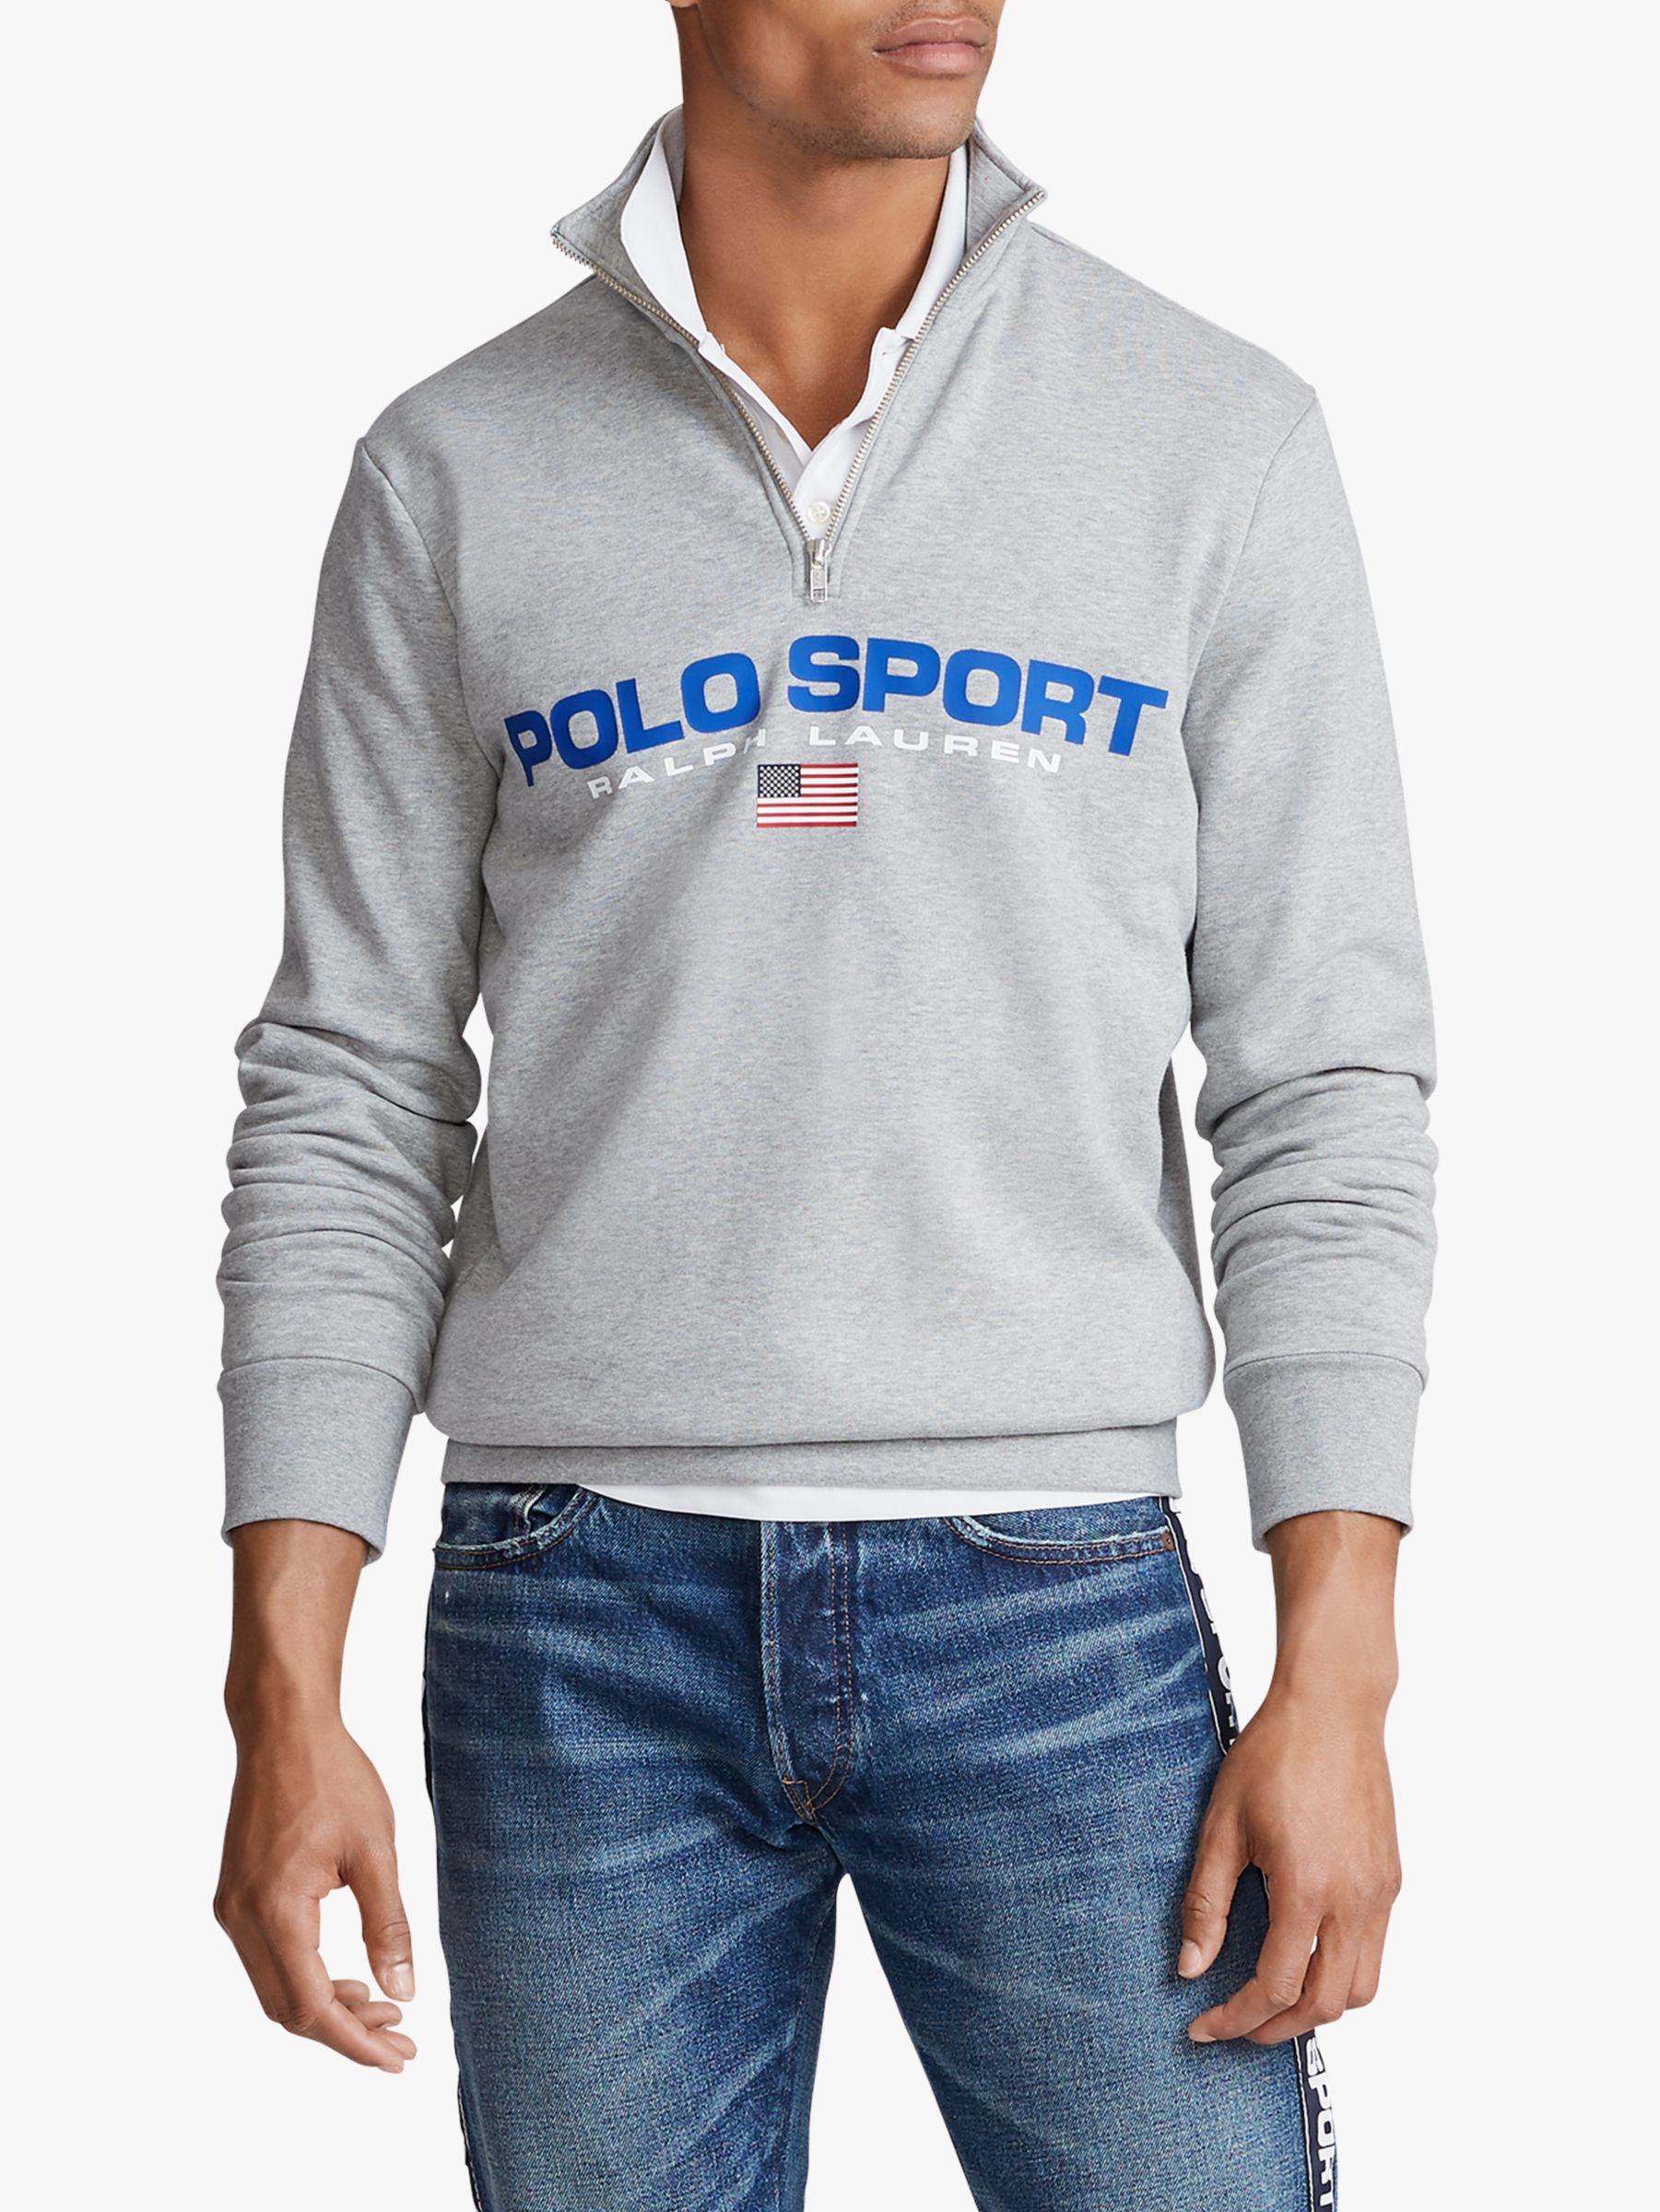 polo sport ralph lauren half zip